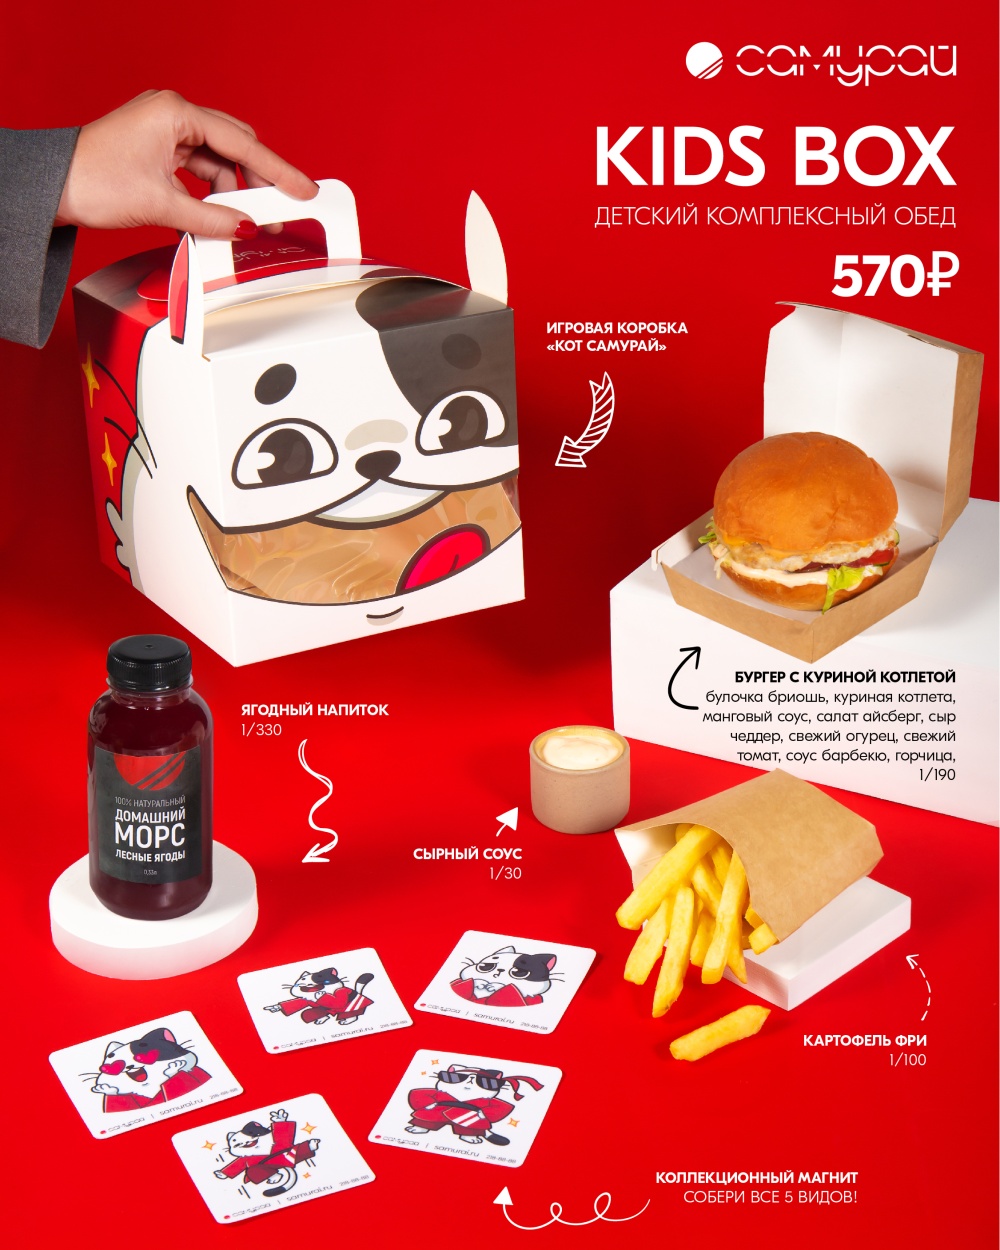 Kids Box для наших юных гостей